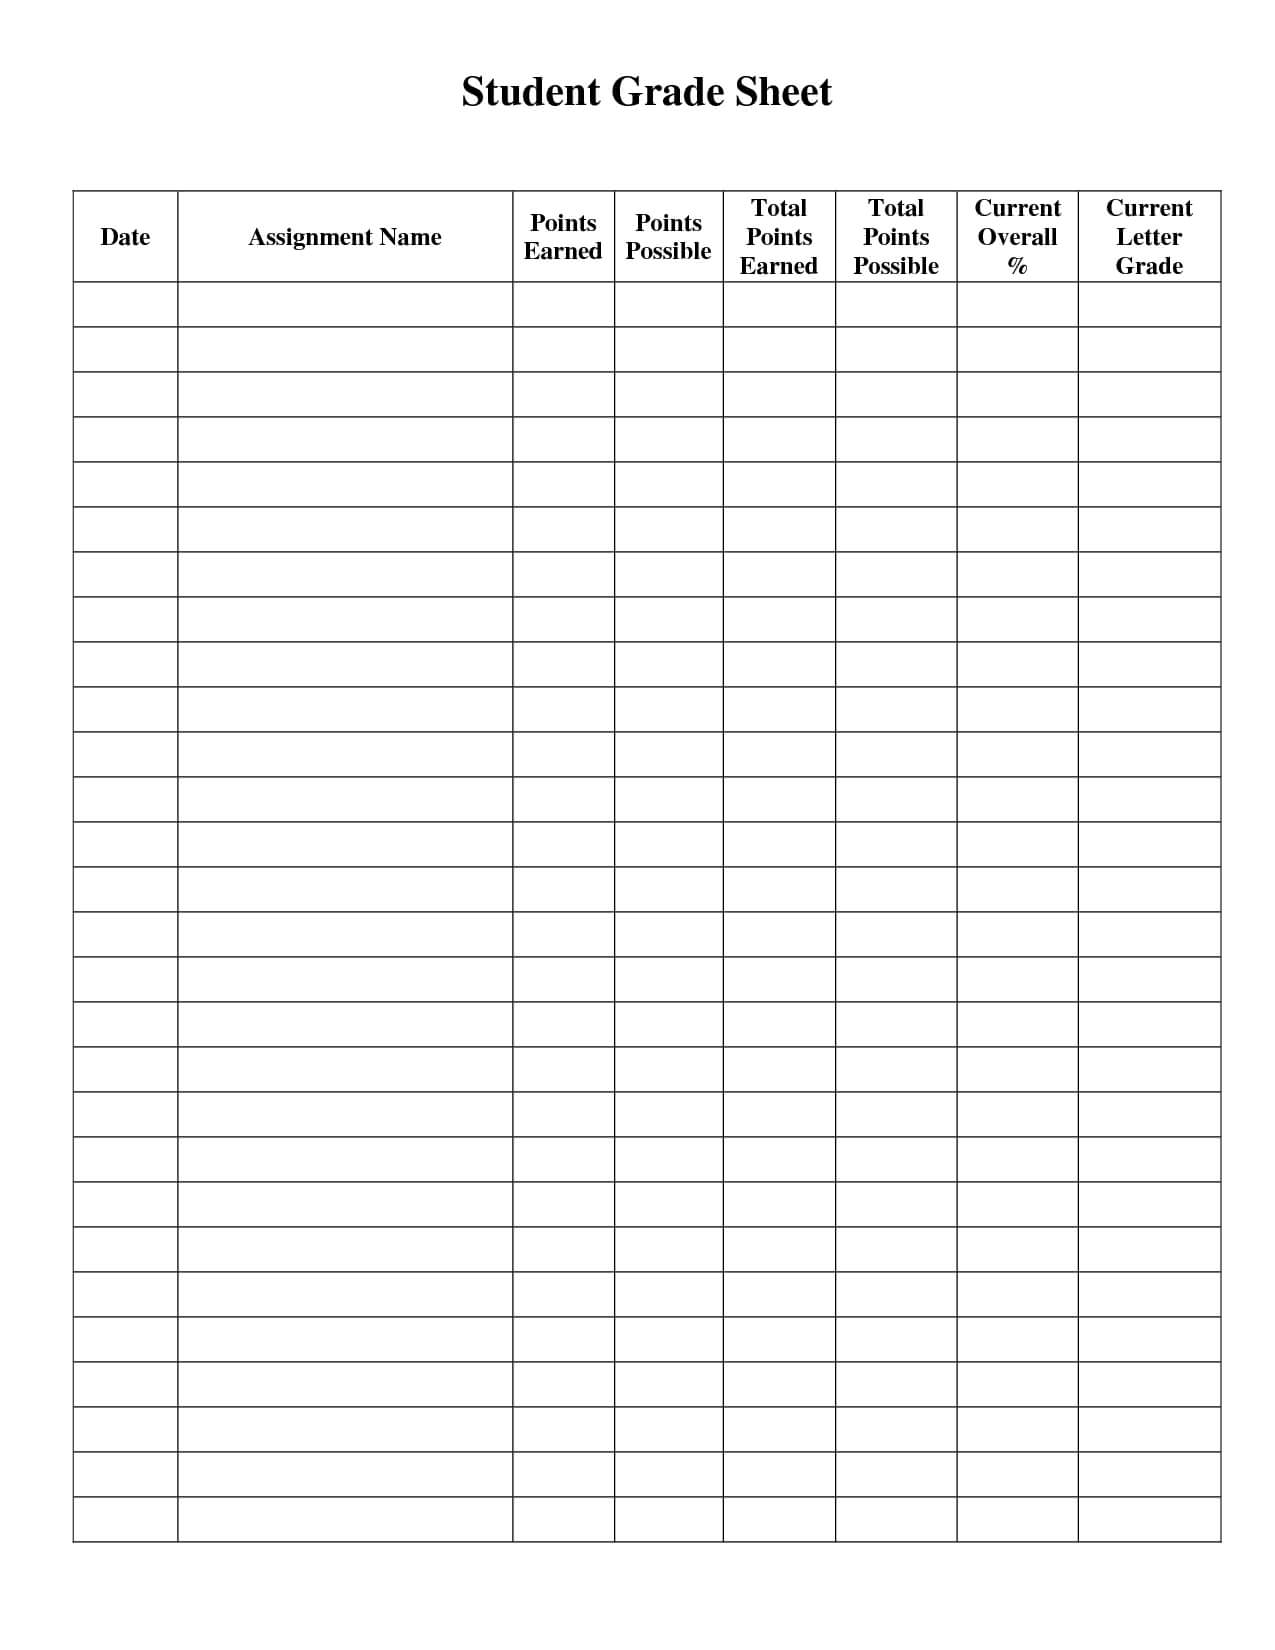 Student Grade Sheet Template | Grade Book Template, Teacher Intended For Student Grade Report Template